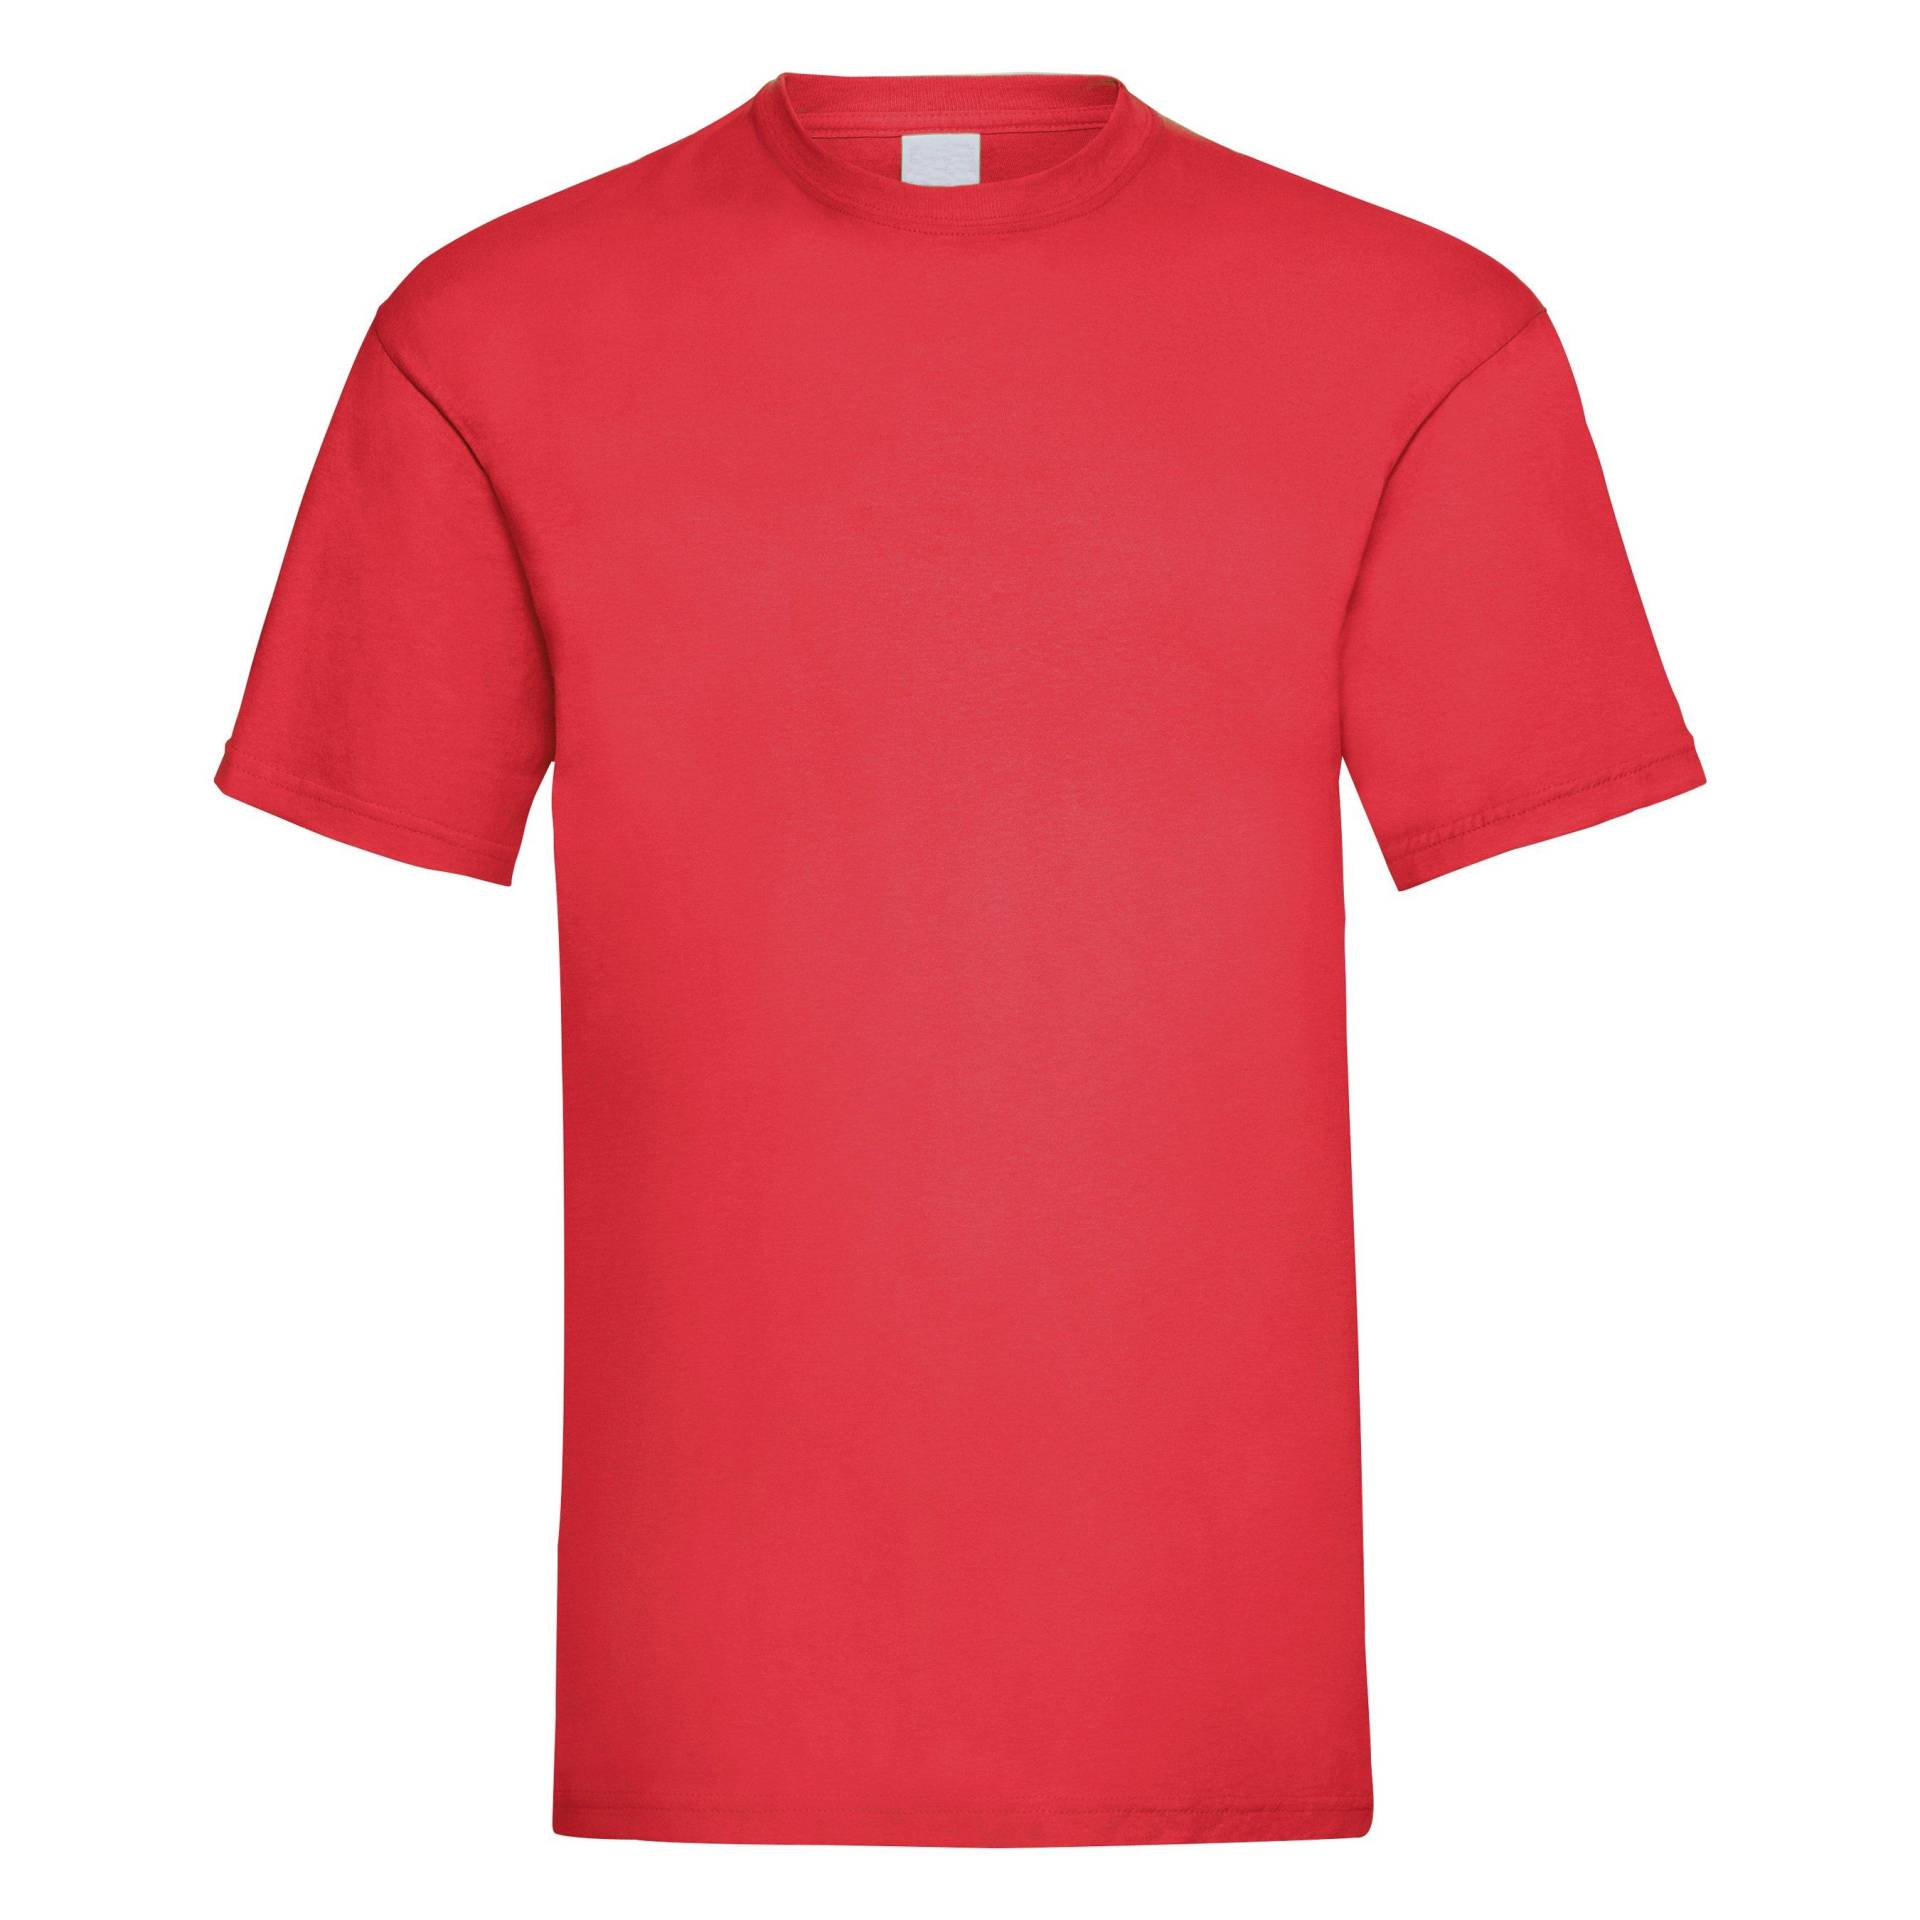 Value Kurzarm Freizeit Tshirt Herren Rot Bunt S von Universal Textiles